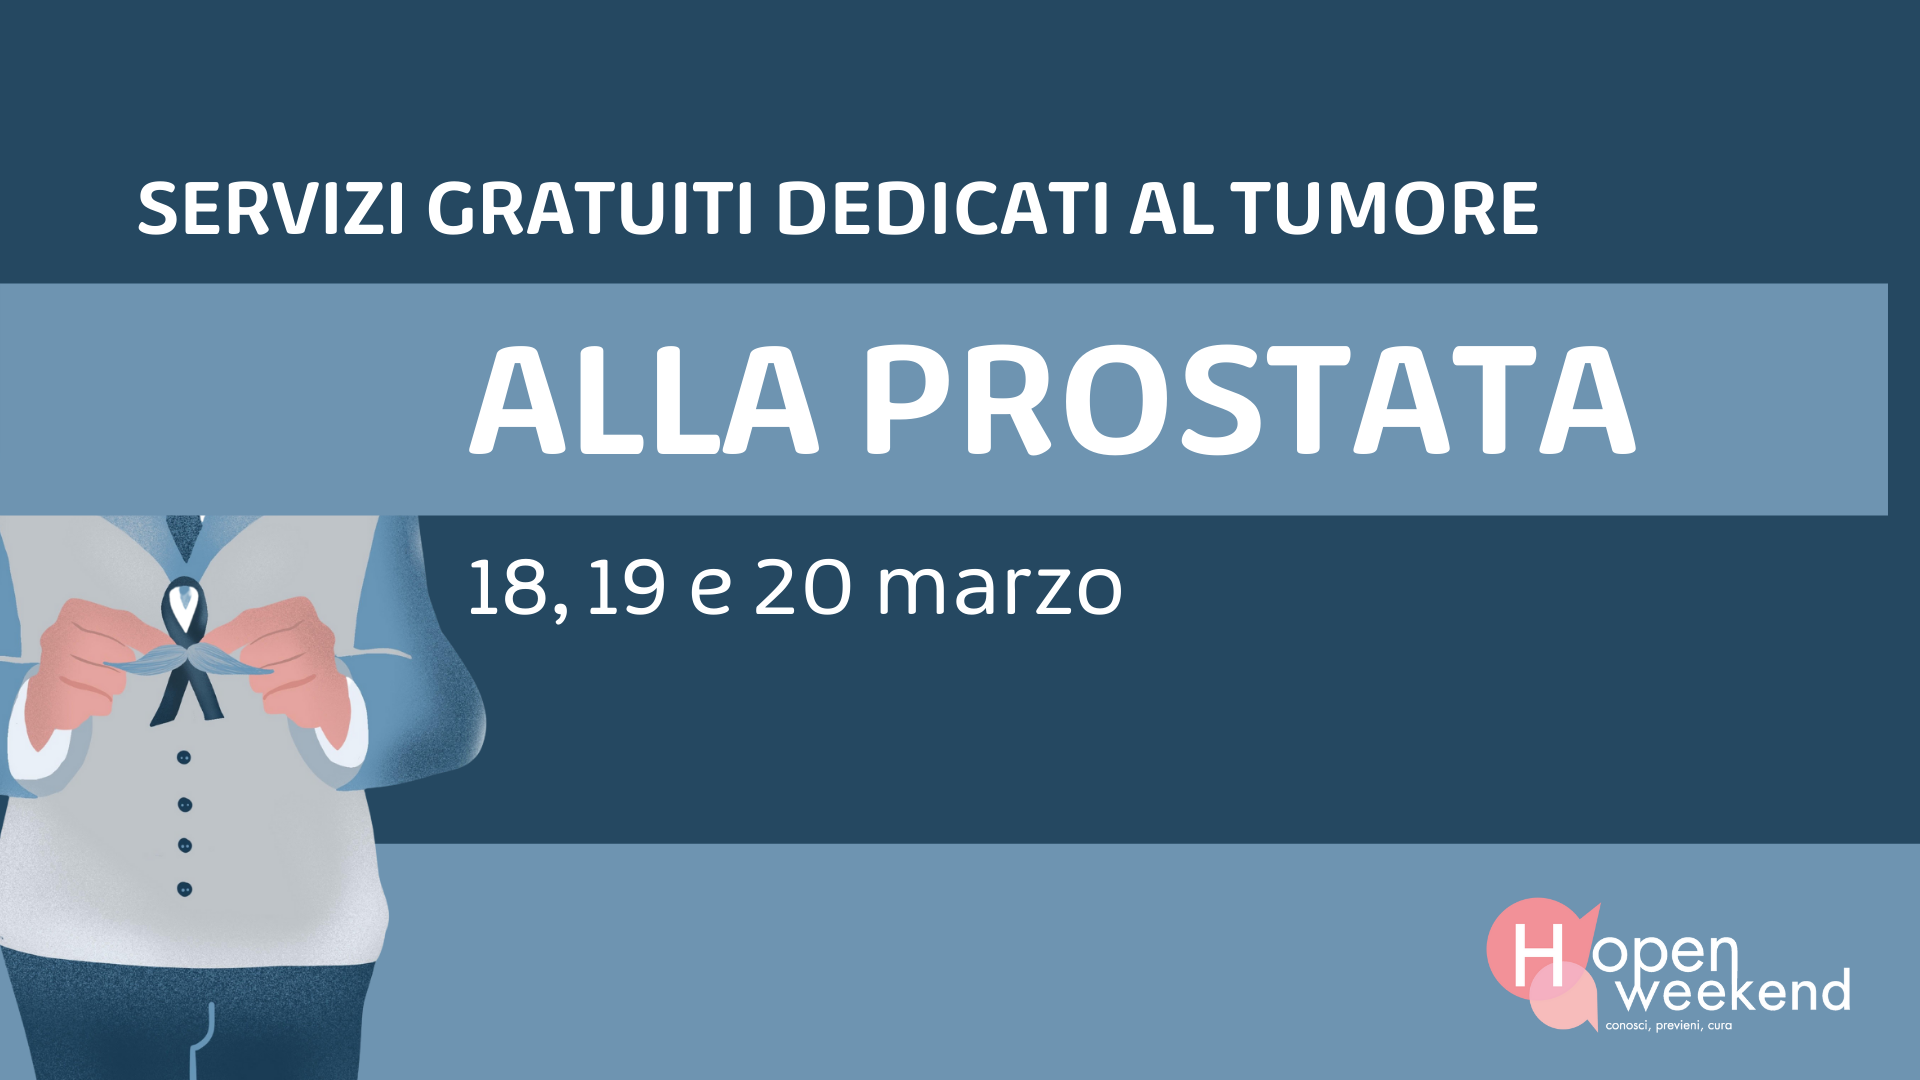  Tumore alla prostata, visite gratuite e consulenze negli ospedali di Chieti, Lanciano e Vasto per l'(H)Open Weekend di Fondazione Onda